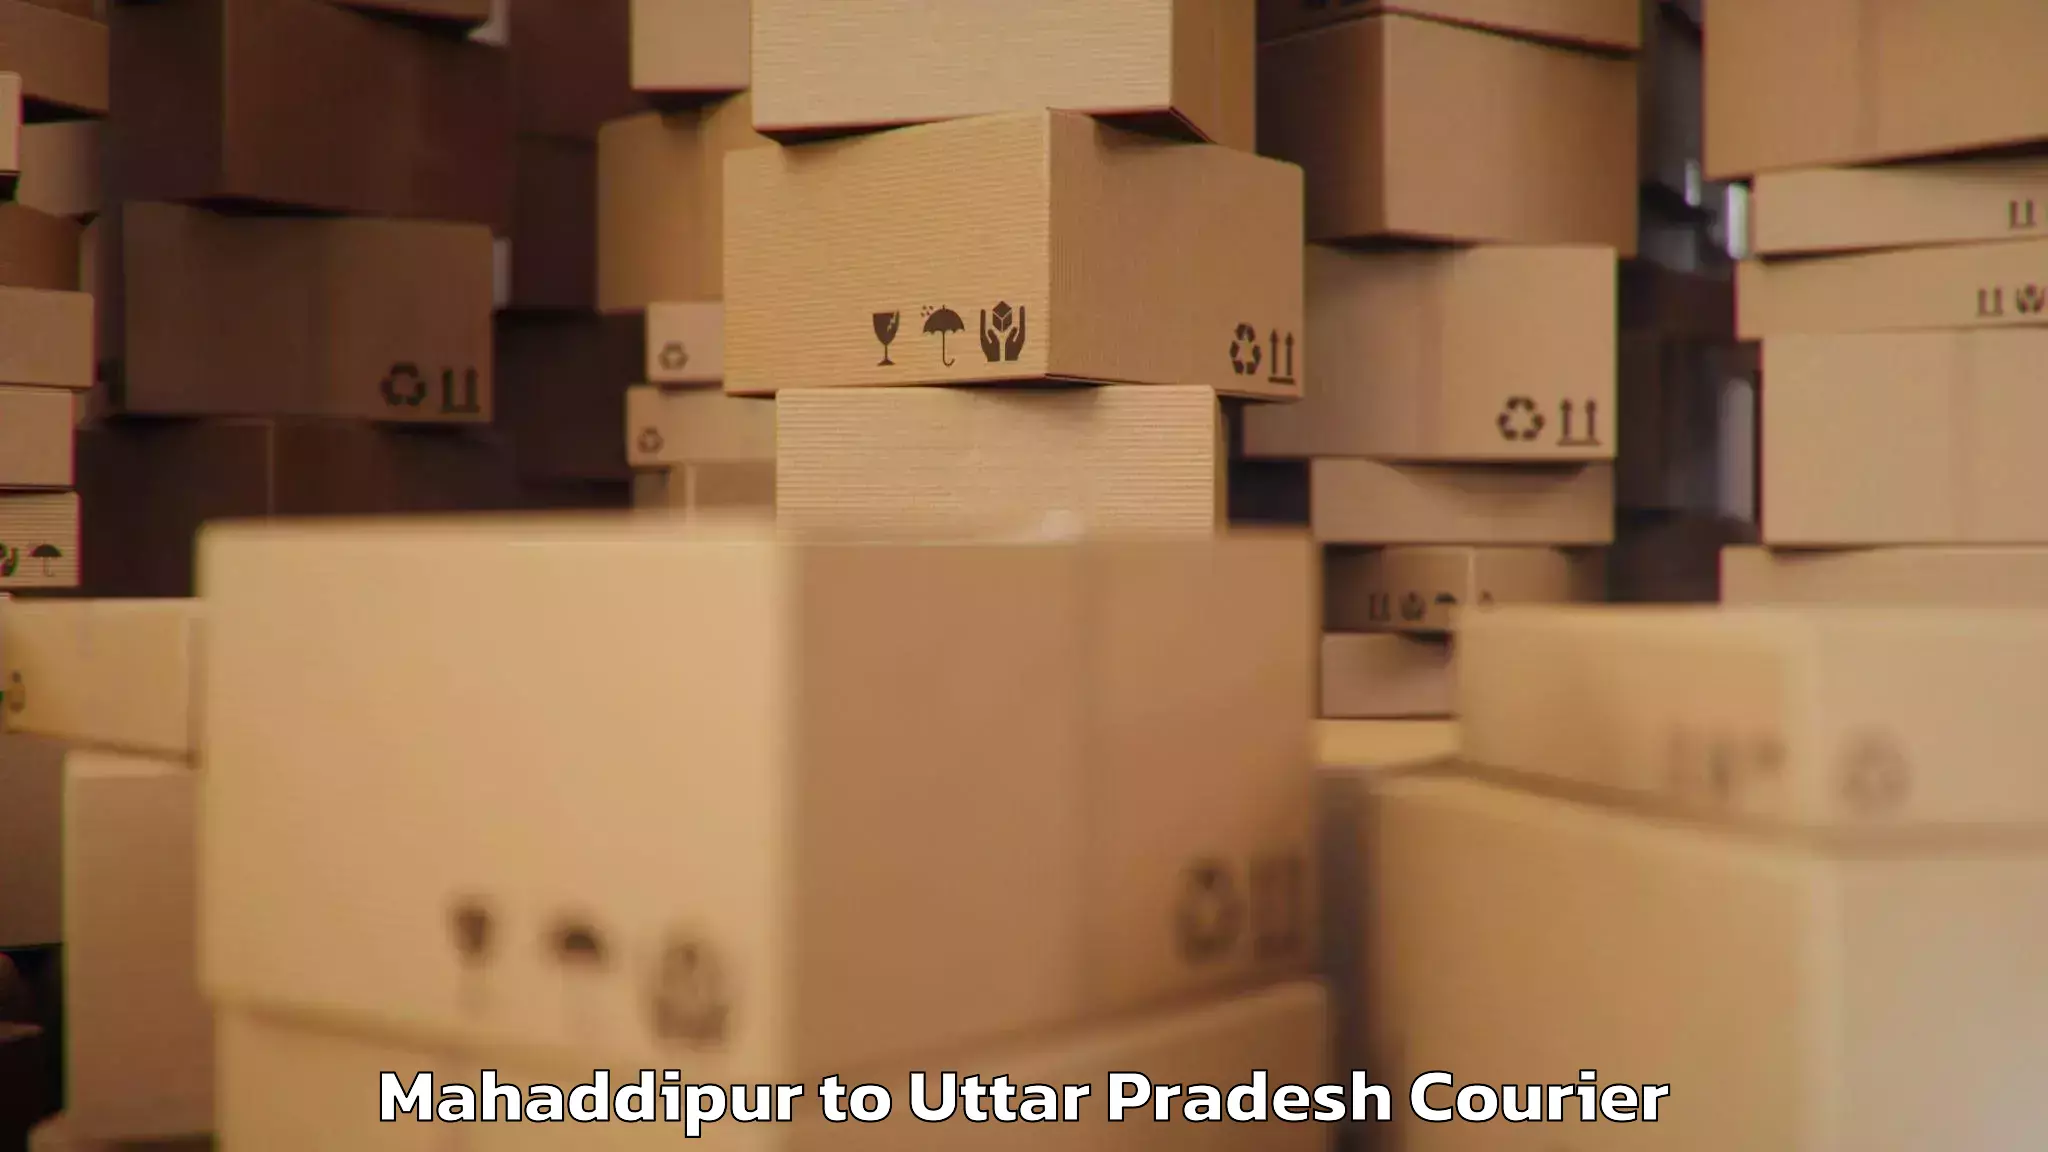 Luggage shipping planner Mahaddipur to Kunraghat